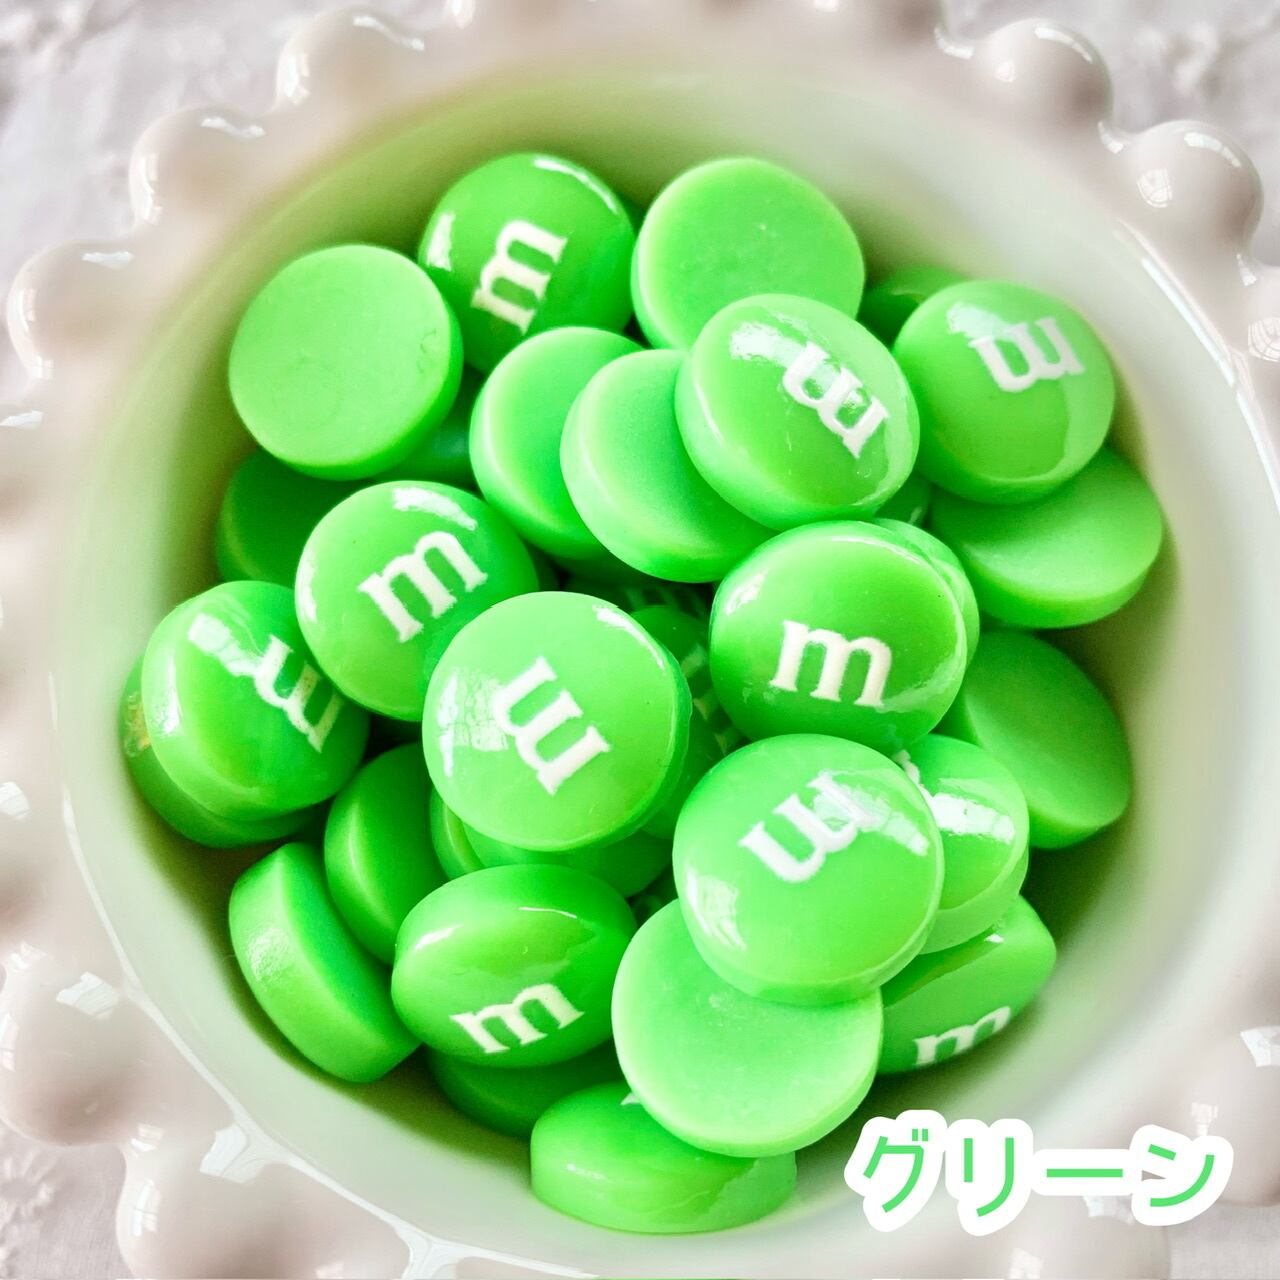 mチョコ デコパ 15円ハンドメイド